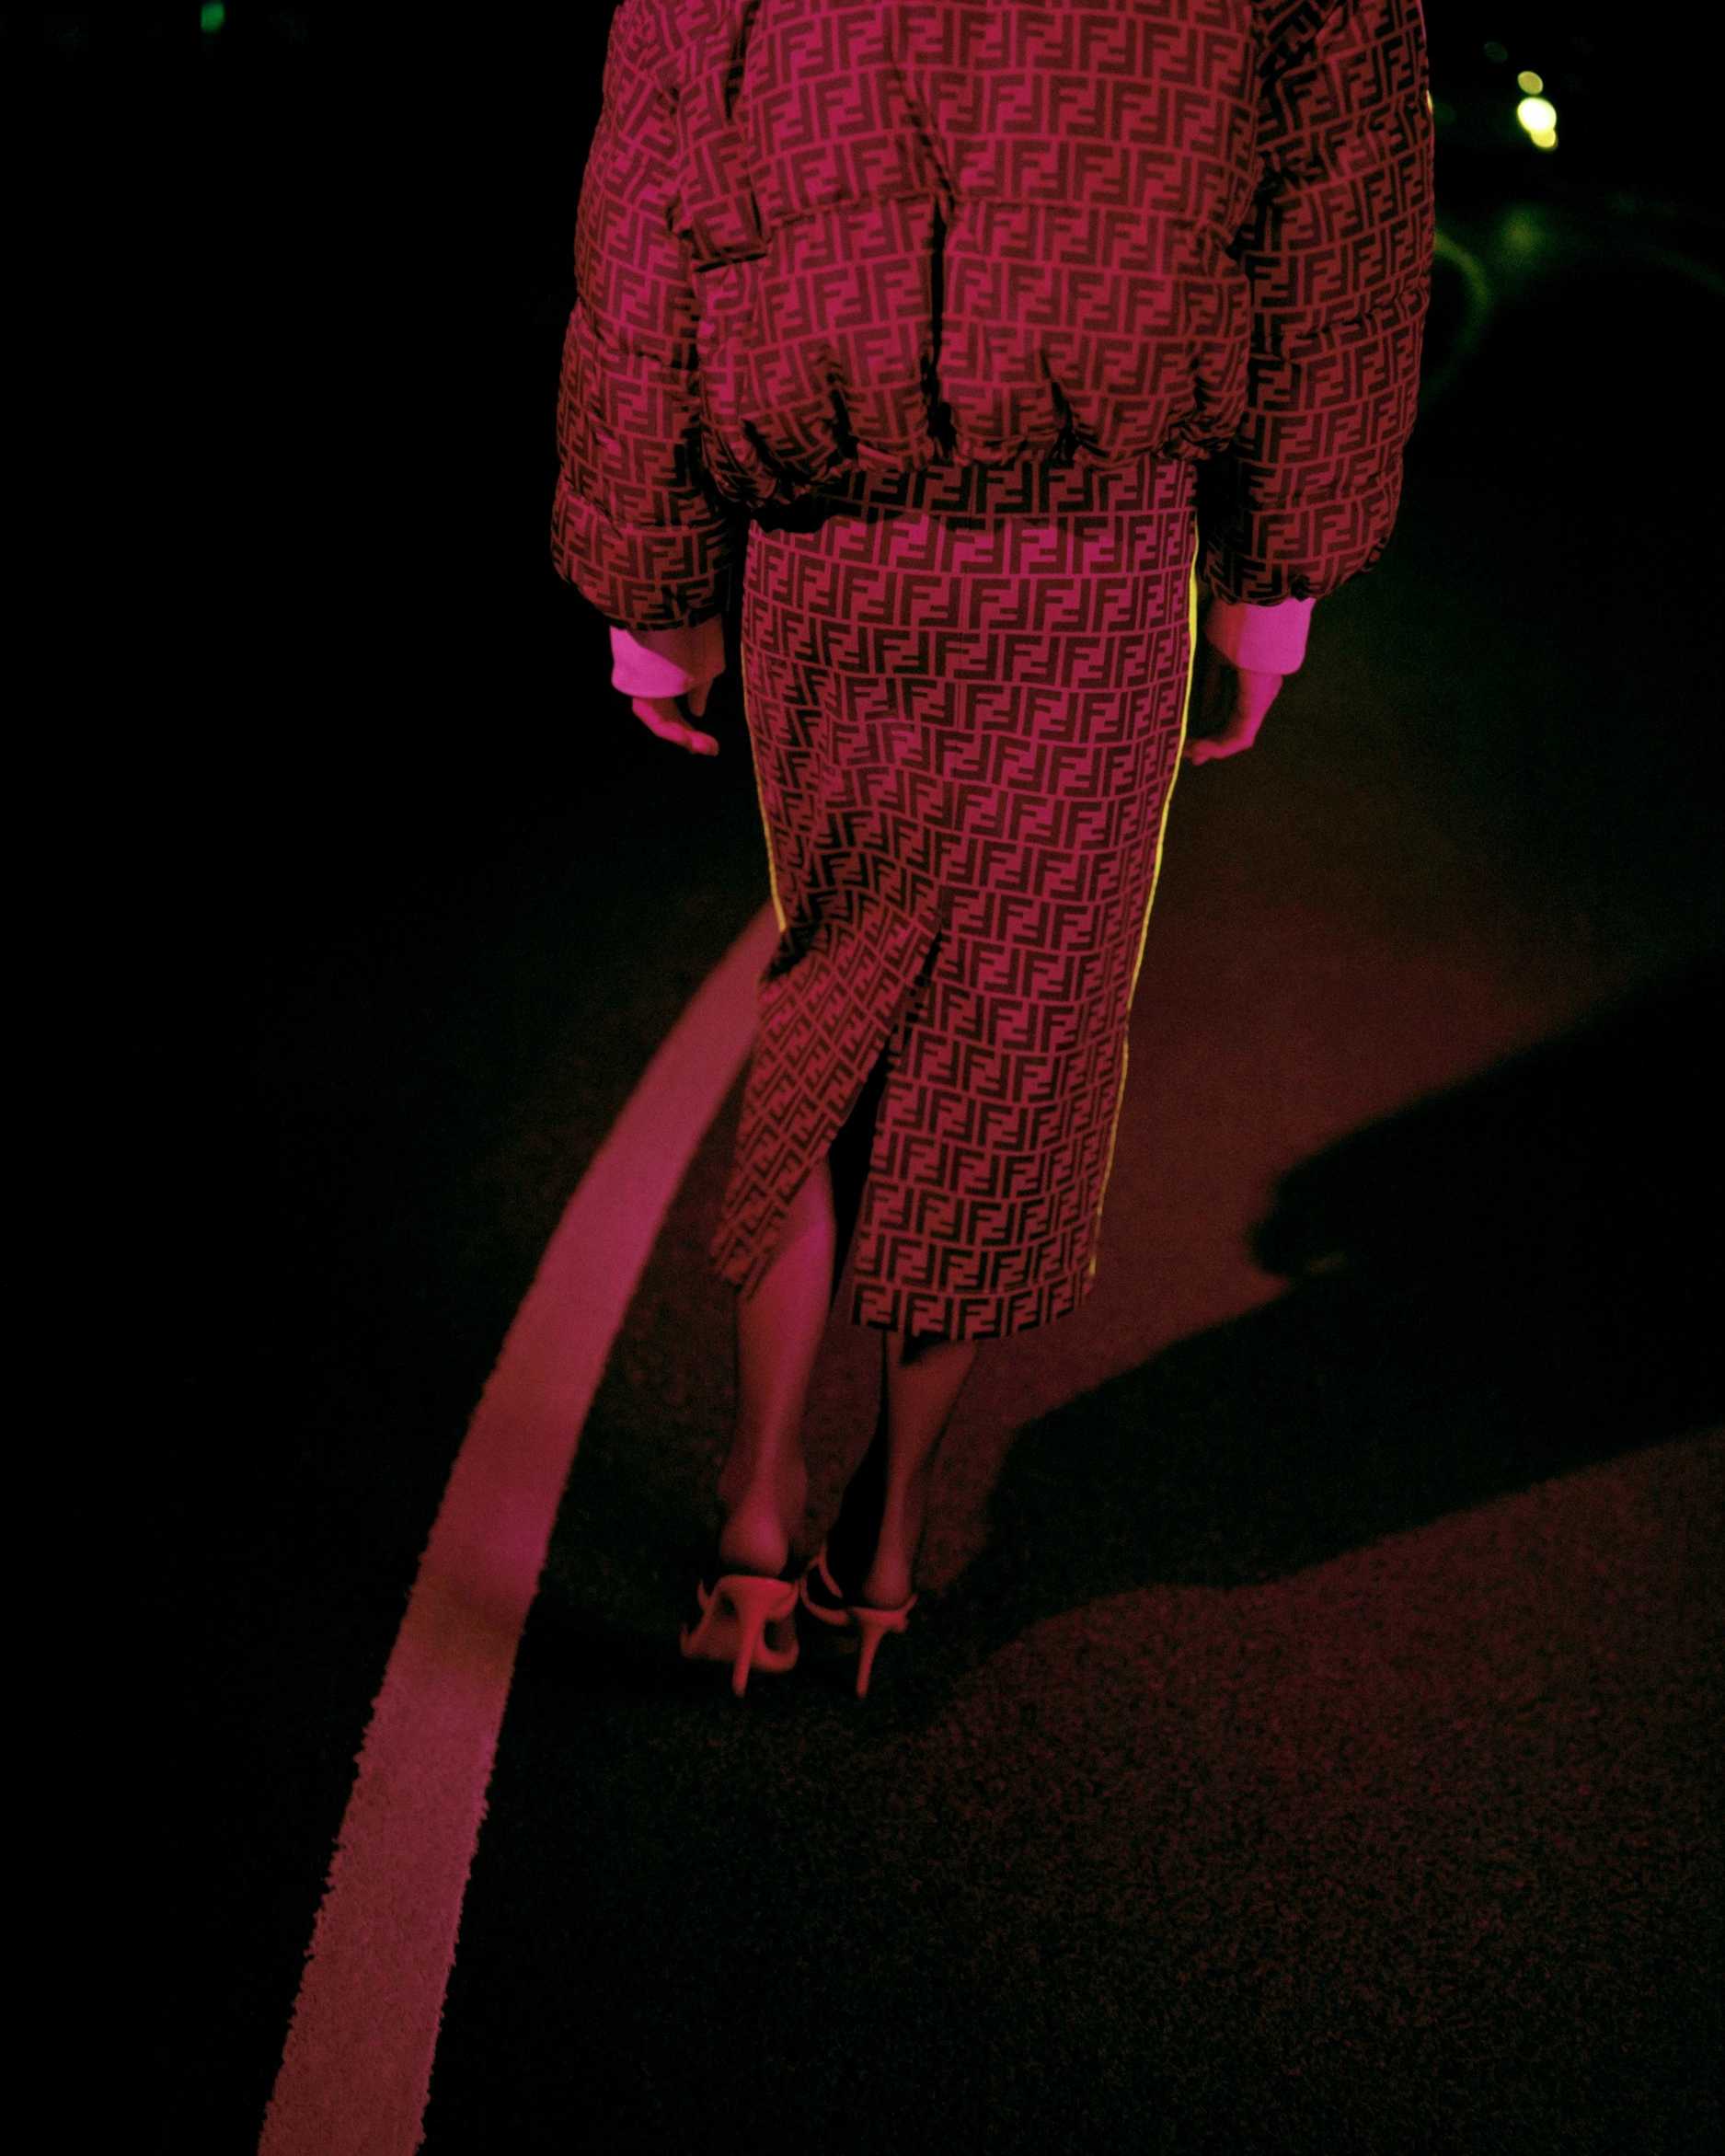 A woman wearing Fendi walks on the dark street